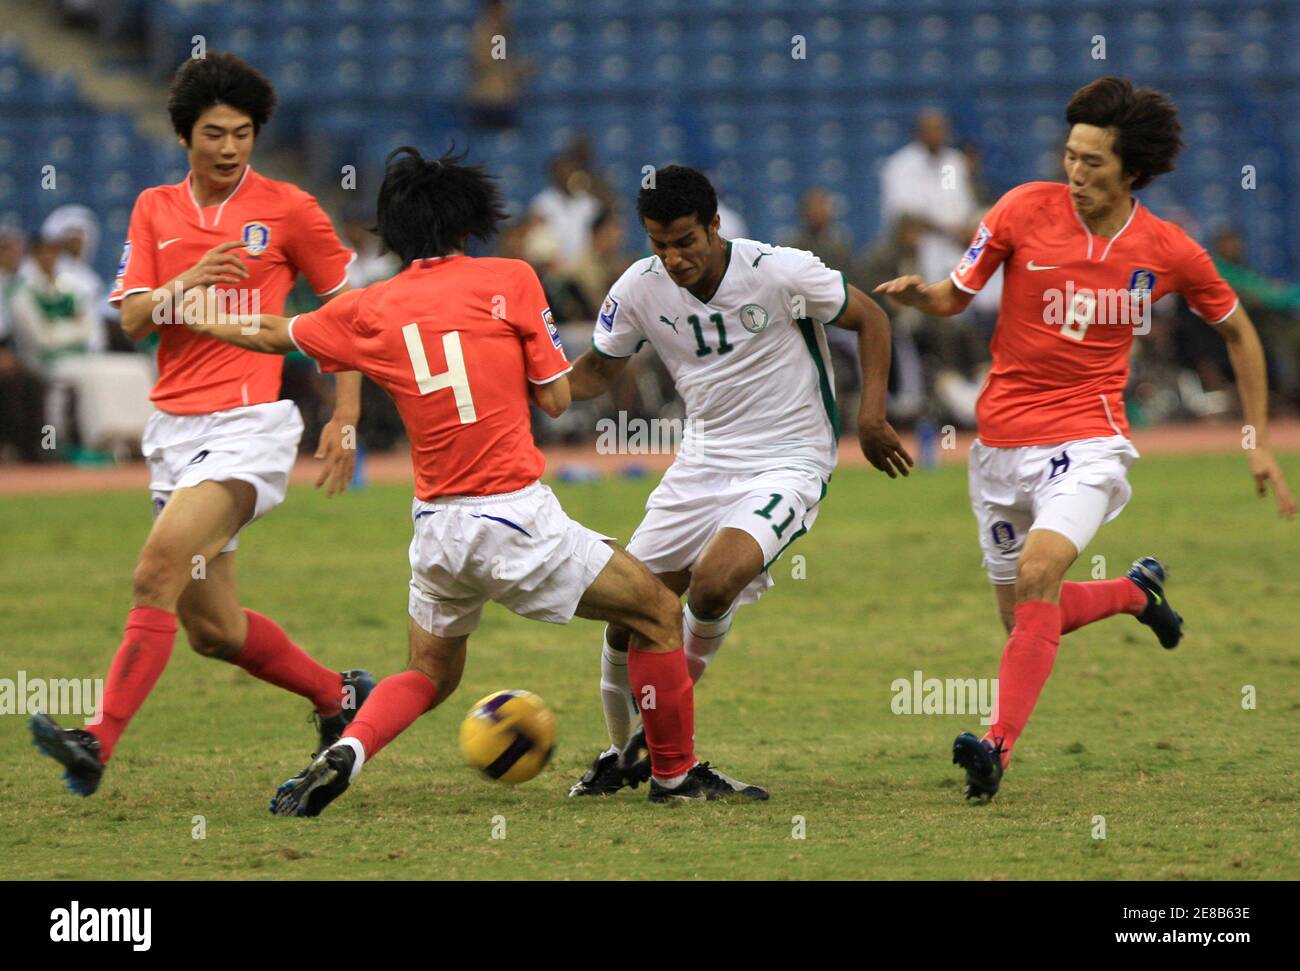 Saudi's Nayaf Hazazi (11) combatte per la palla con Kim Chi Woo, Cho Yong Hkang e Ki Sung Yueng della Corea del Sud durante la loro partita di calcio di qualificazione Coppa del mondo a Riyadh 19 novembre 2008. REUTERS/Fahad Shadeed (ARABIA SAUDITA) Foto Stock